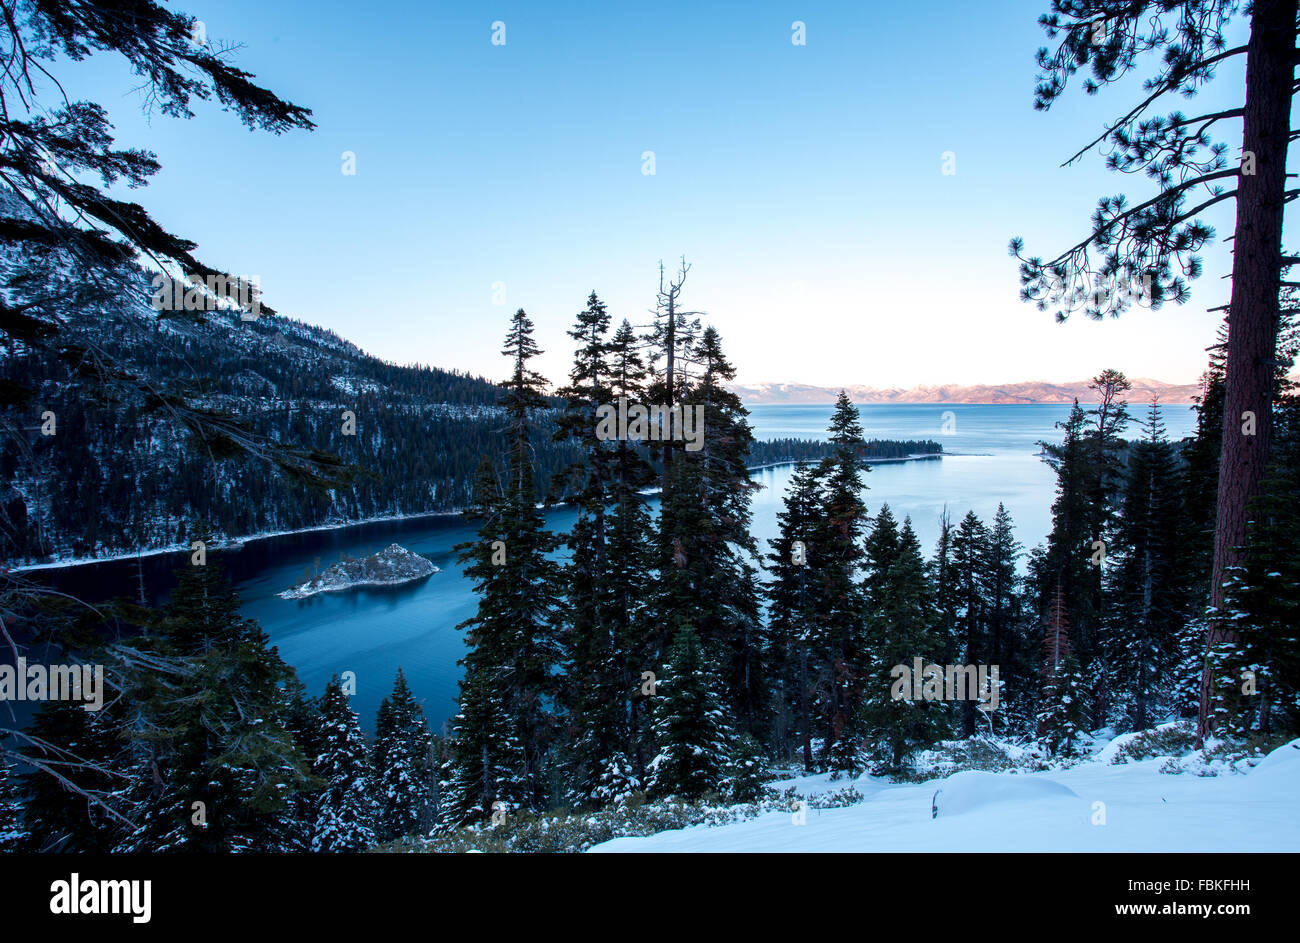 Montagnes couvertes de neige à Emerald Bay dans la région de South Lake Tahoe, en Californie Banque D'Images